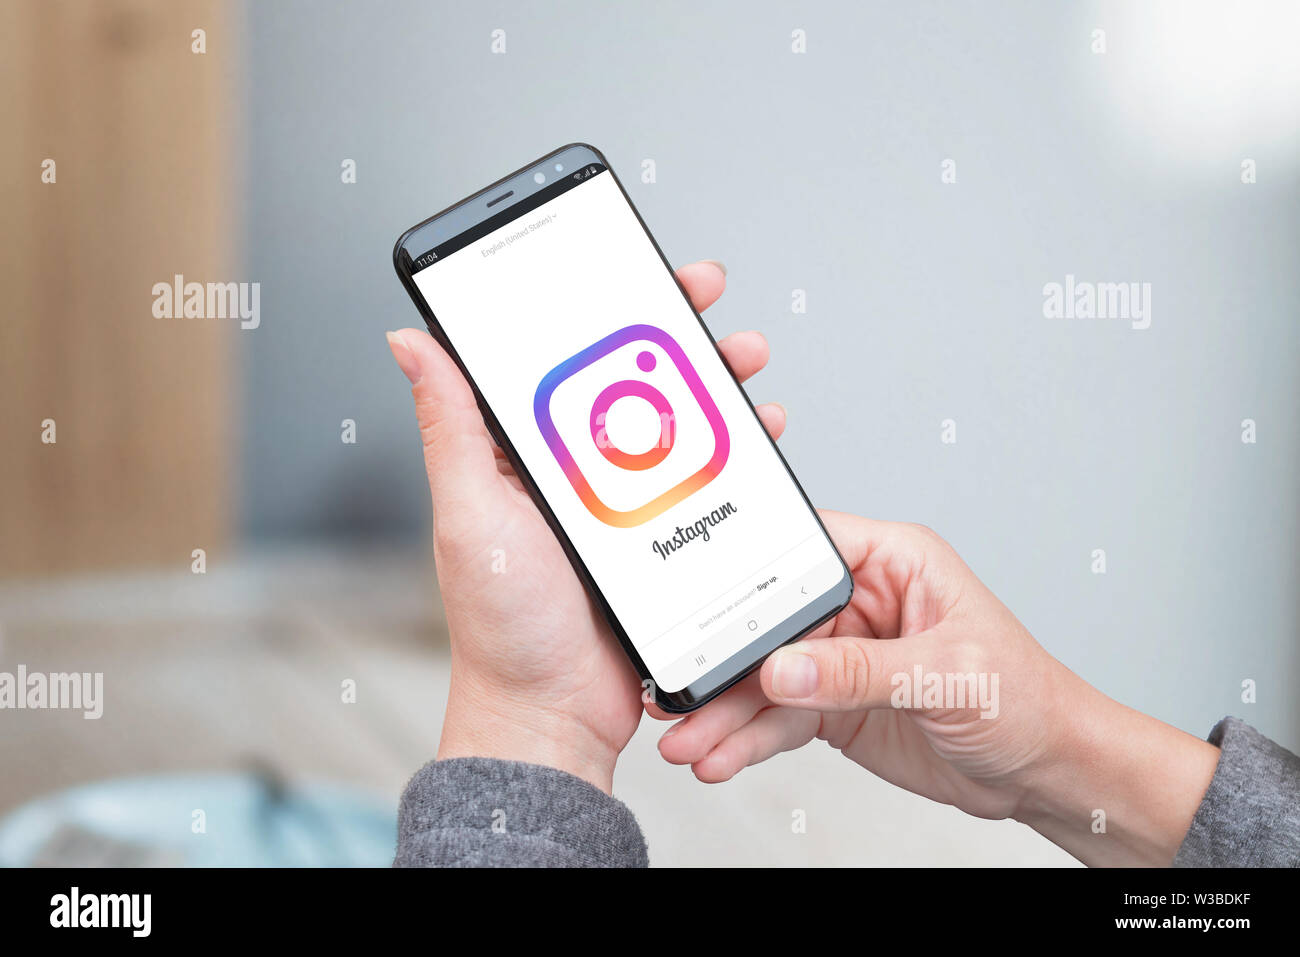 SARAJEVO, Bosnie-herzégovine - Juillet 14, 2019 : femme utilise l'application Instagram. Grand logo sur l'écran du smartphone Instagram. Banque D'Images